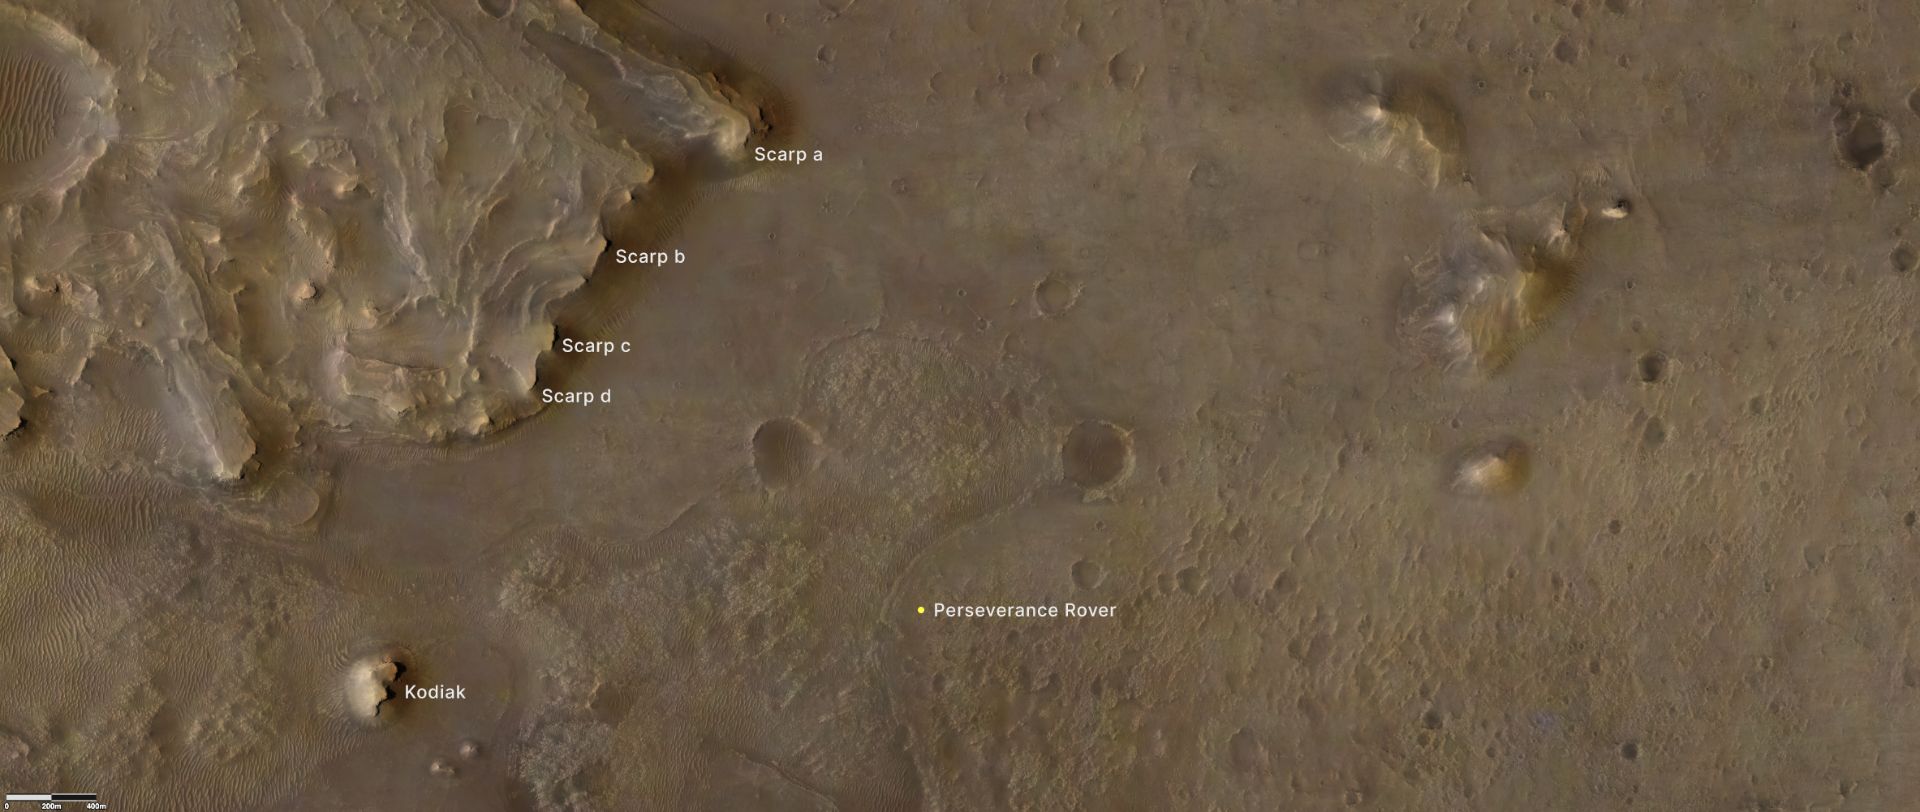 تصویر ماهواره ای از دهانه جزیرو در مریخ